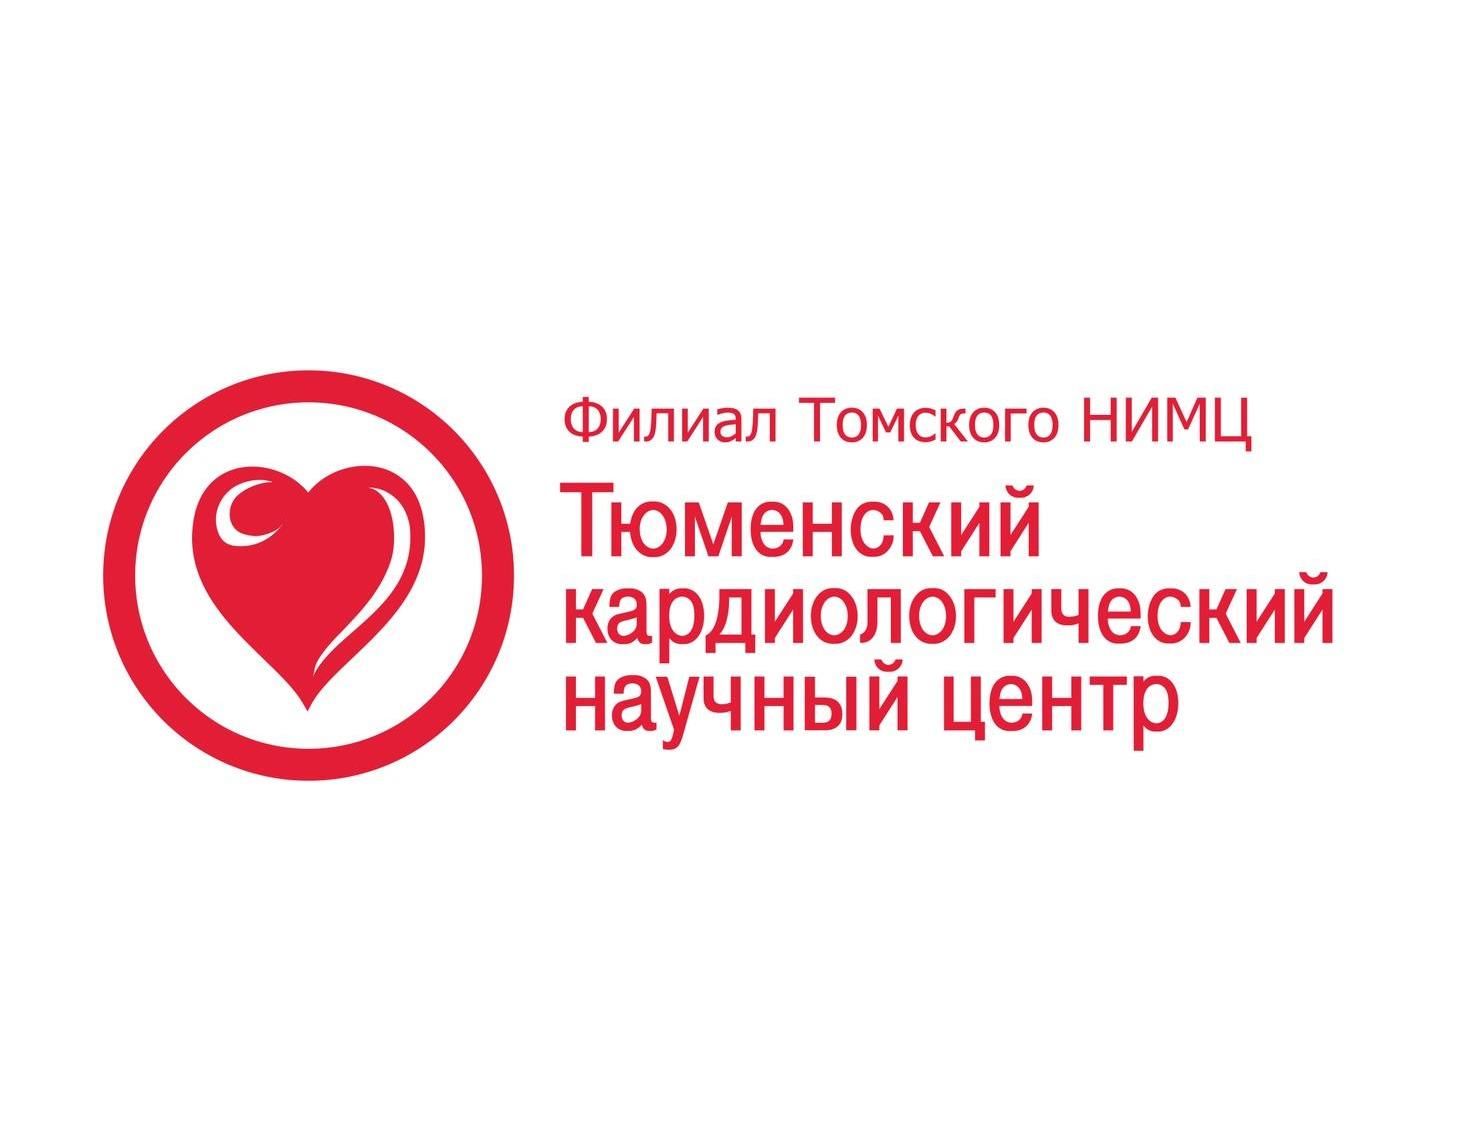 Международная конференция «Антитромбоцитарная терапия у больных с высоким риском сердечно-сосудистых осложнений»